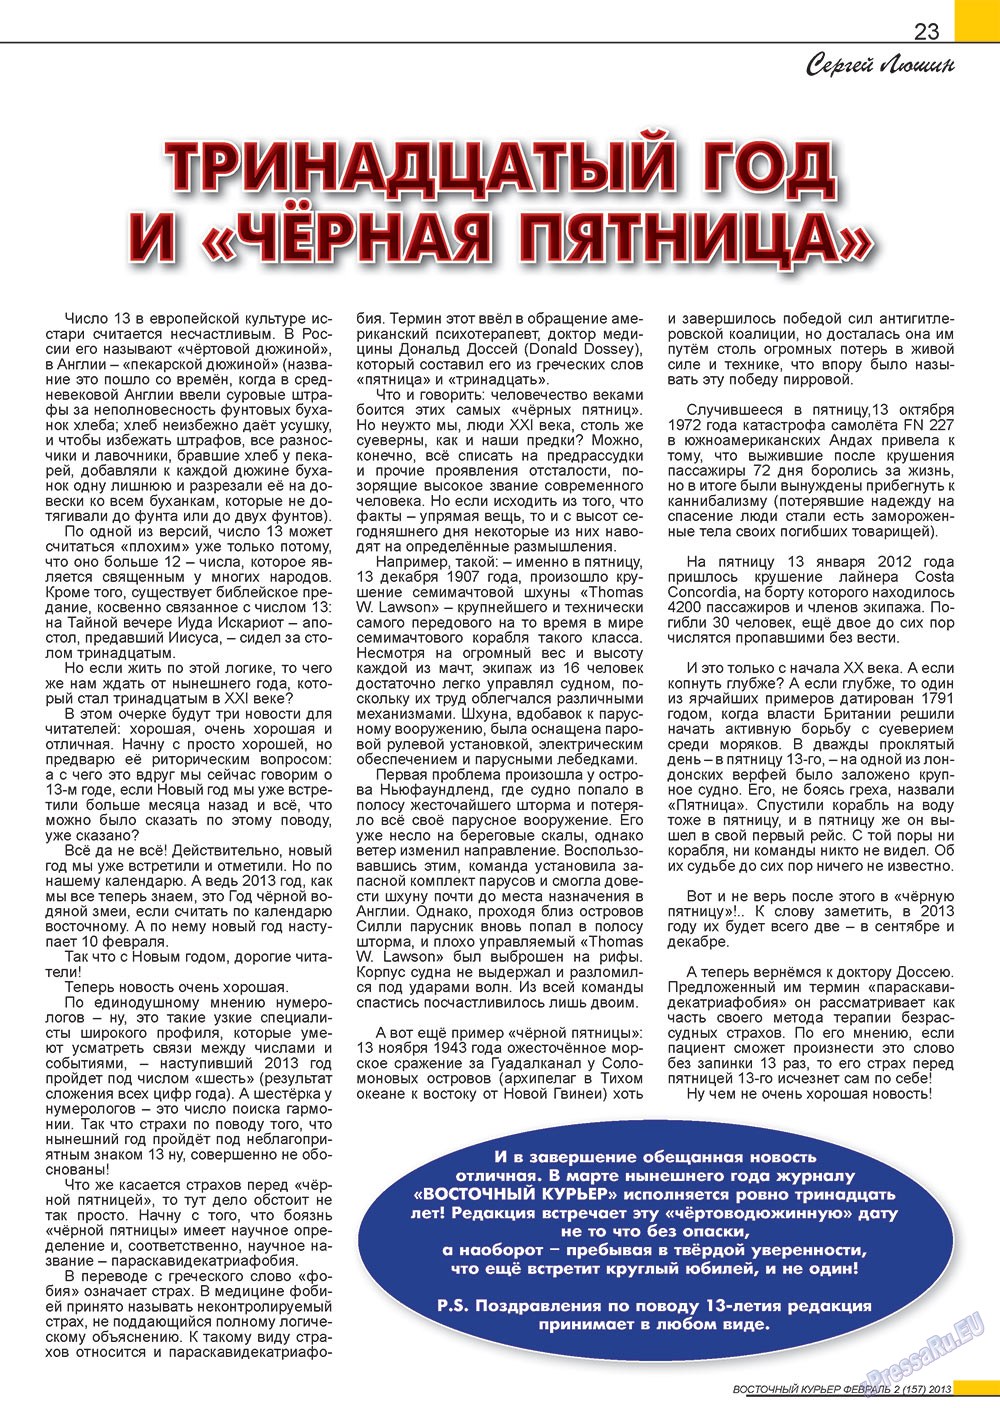 Восточный курьер, журнал. 2013 №2 стр.23